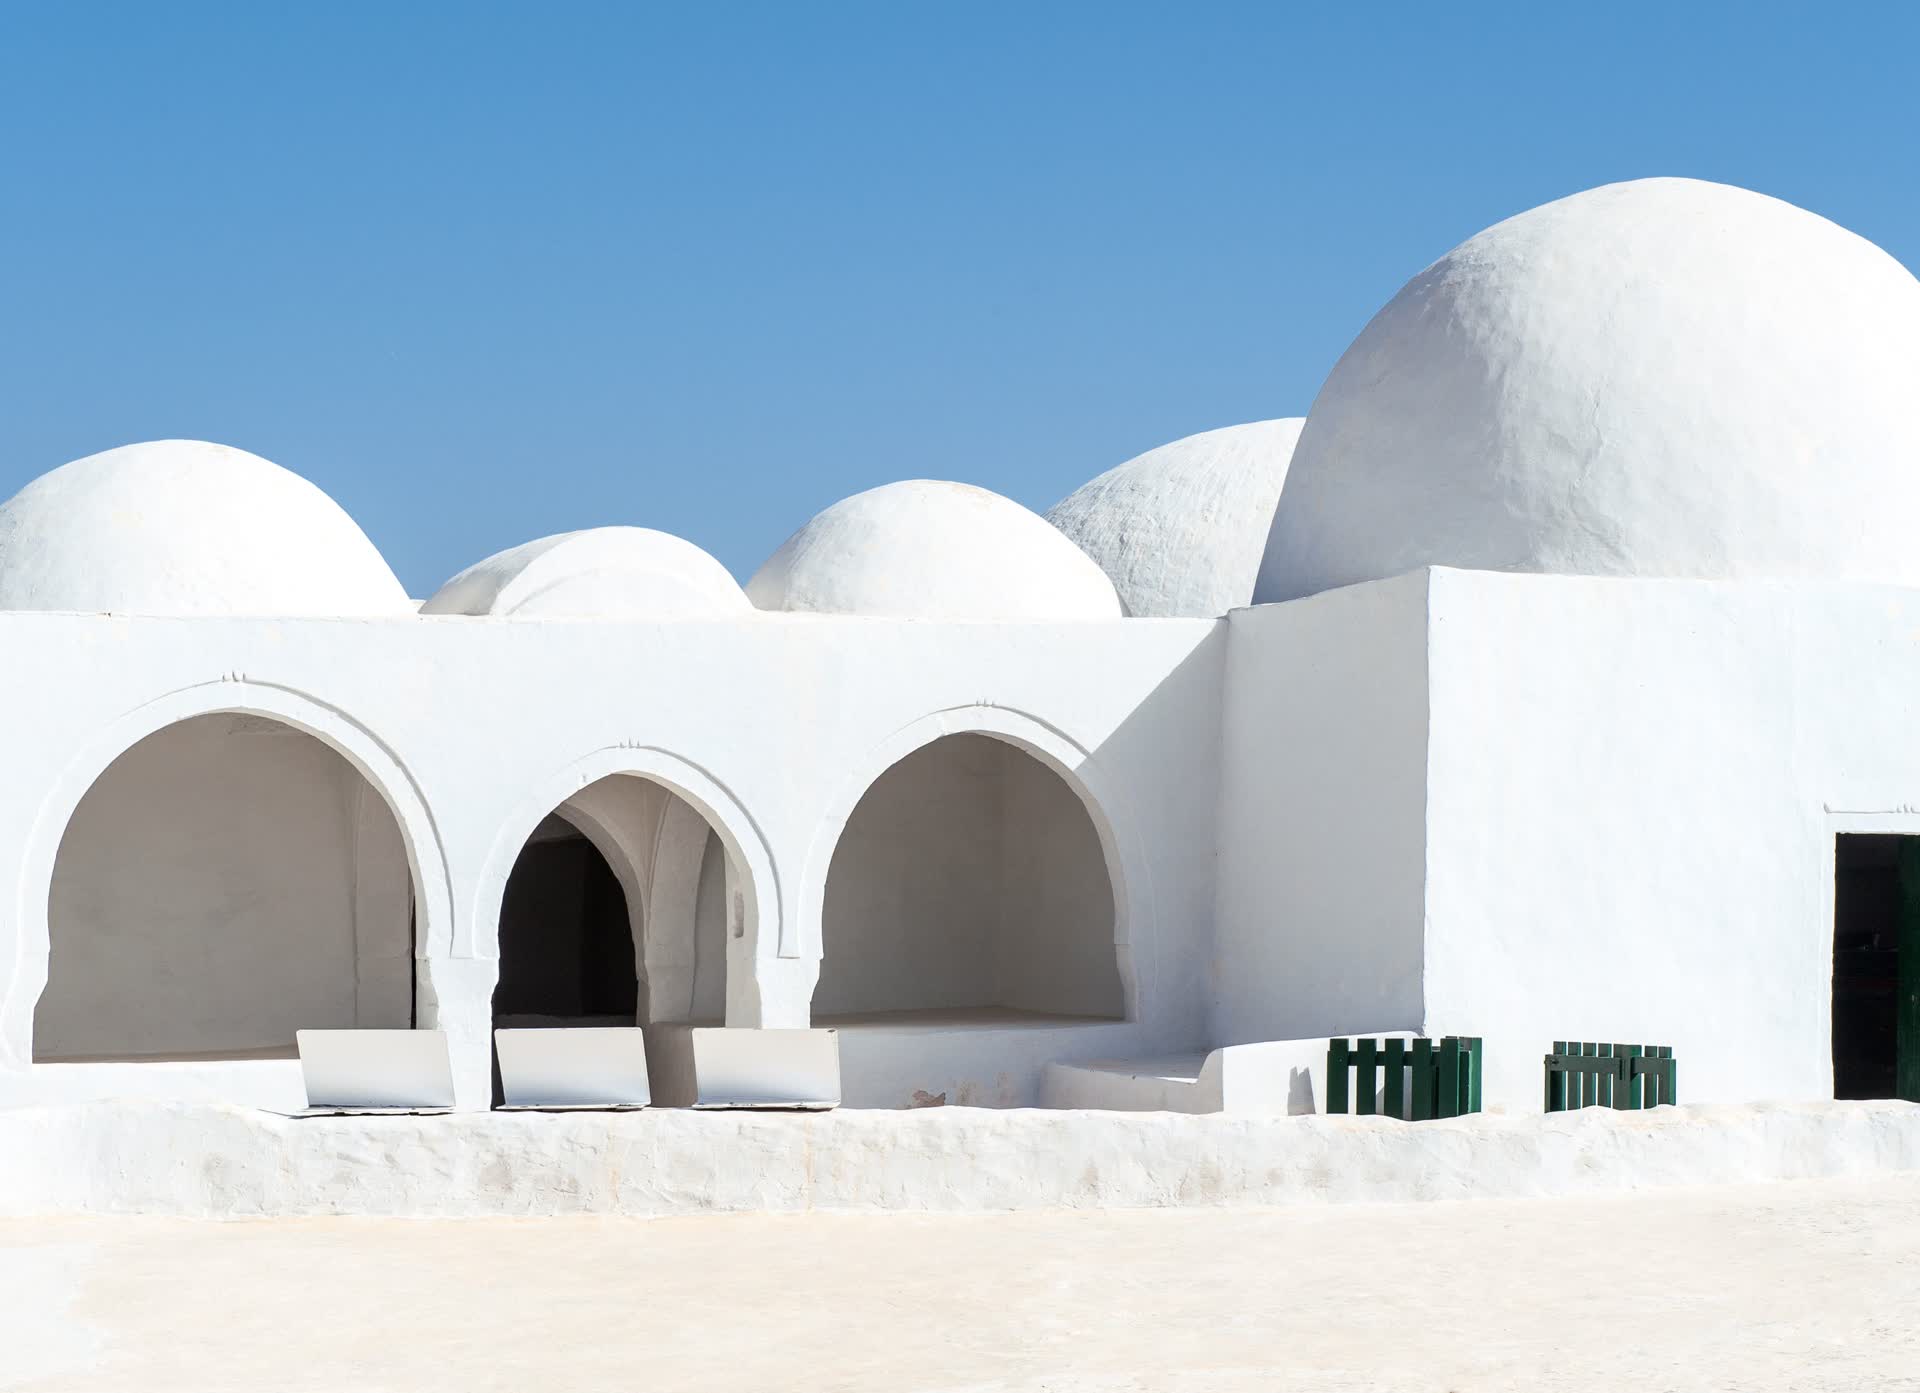 Maison type tunisienne à Djerba. JVO Voyage, votre agence de voyages en groupe par excellence, organise des excursions en Tunisie.